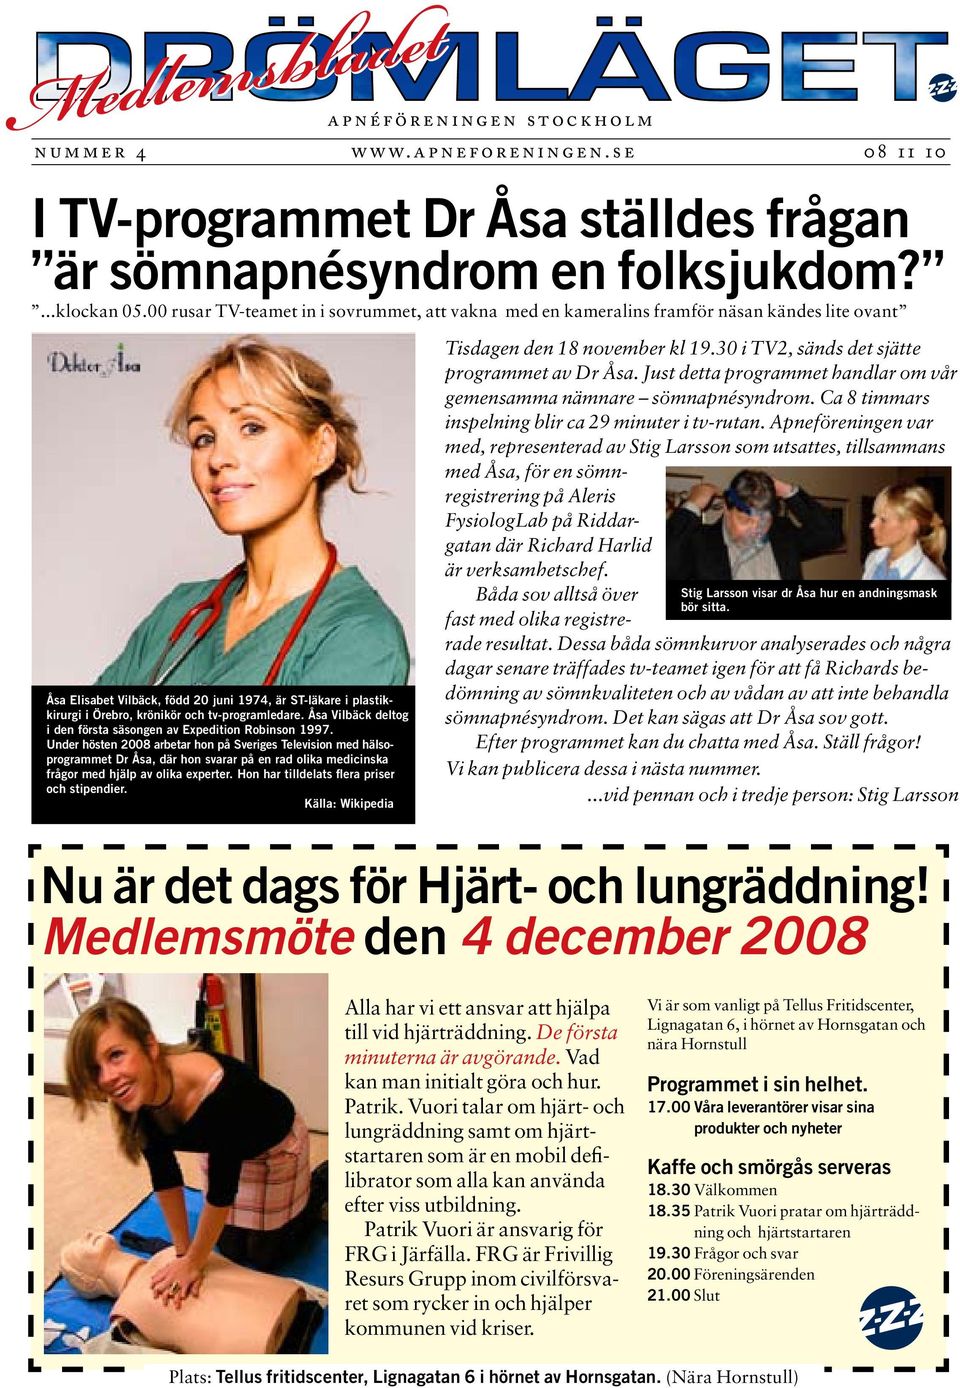 tv-programledare. Åsa Vilbäck deltog i den första säsongen av Expedition Robinson 1997.